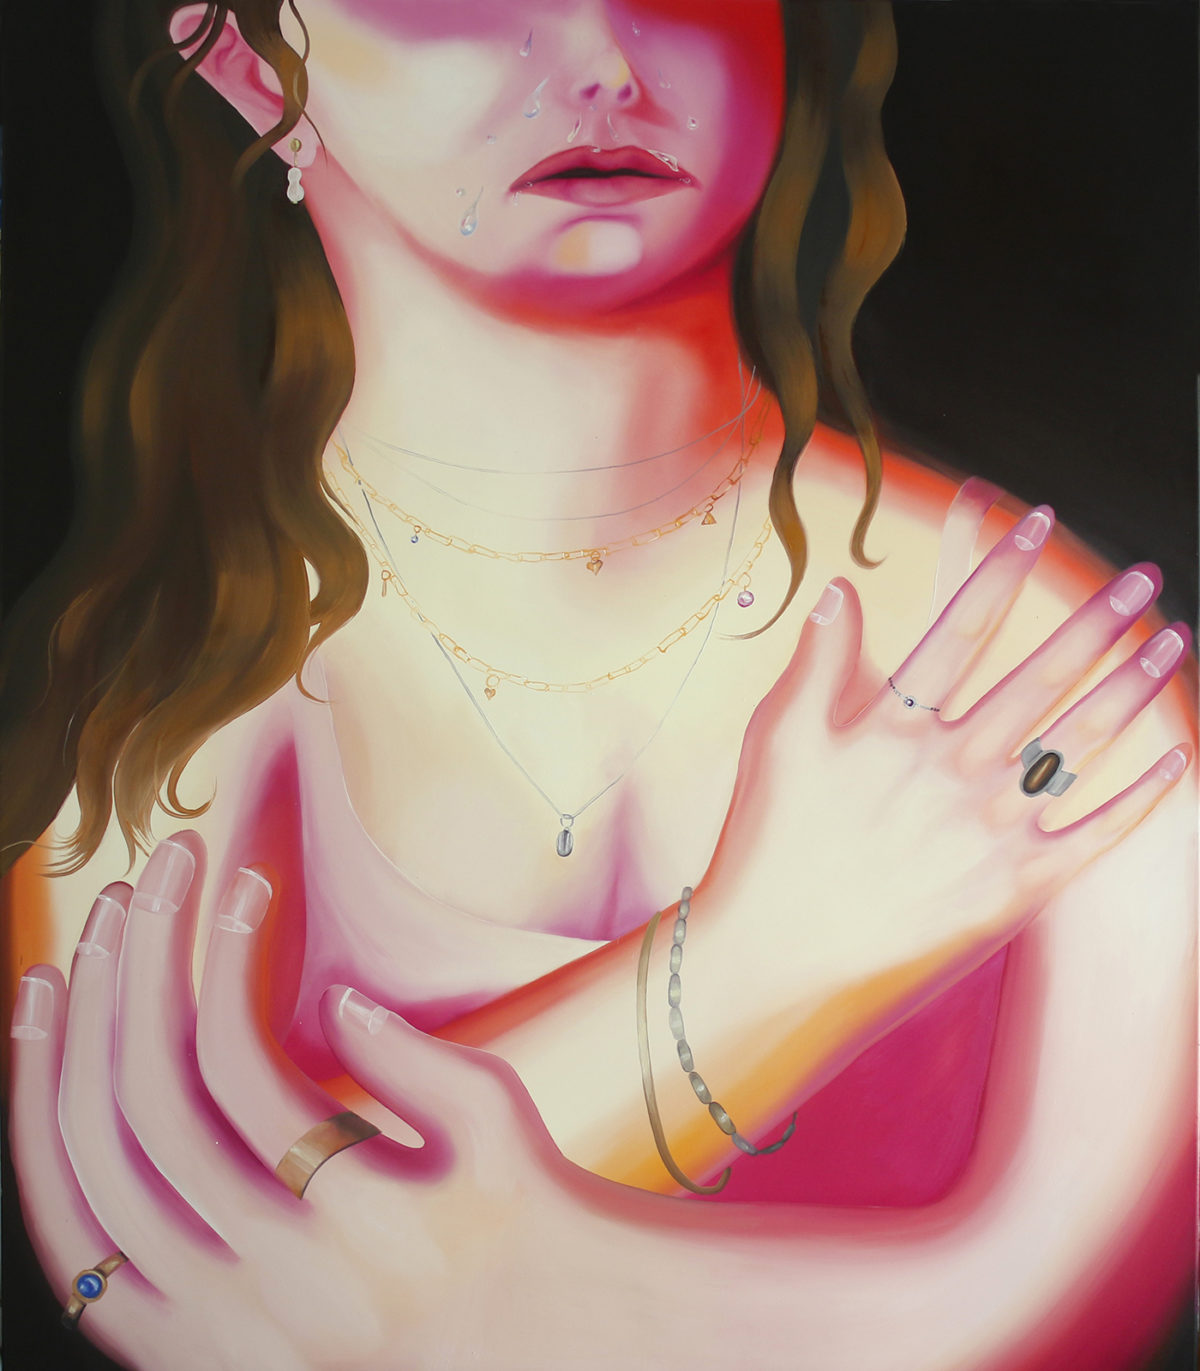 Płacząca dama,160x135cm, olej na płótnie, 2019 (Tycjan- Płacząca Maria Magdalena)